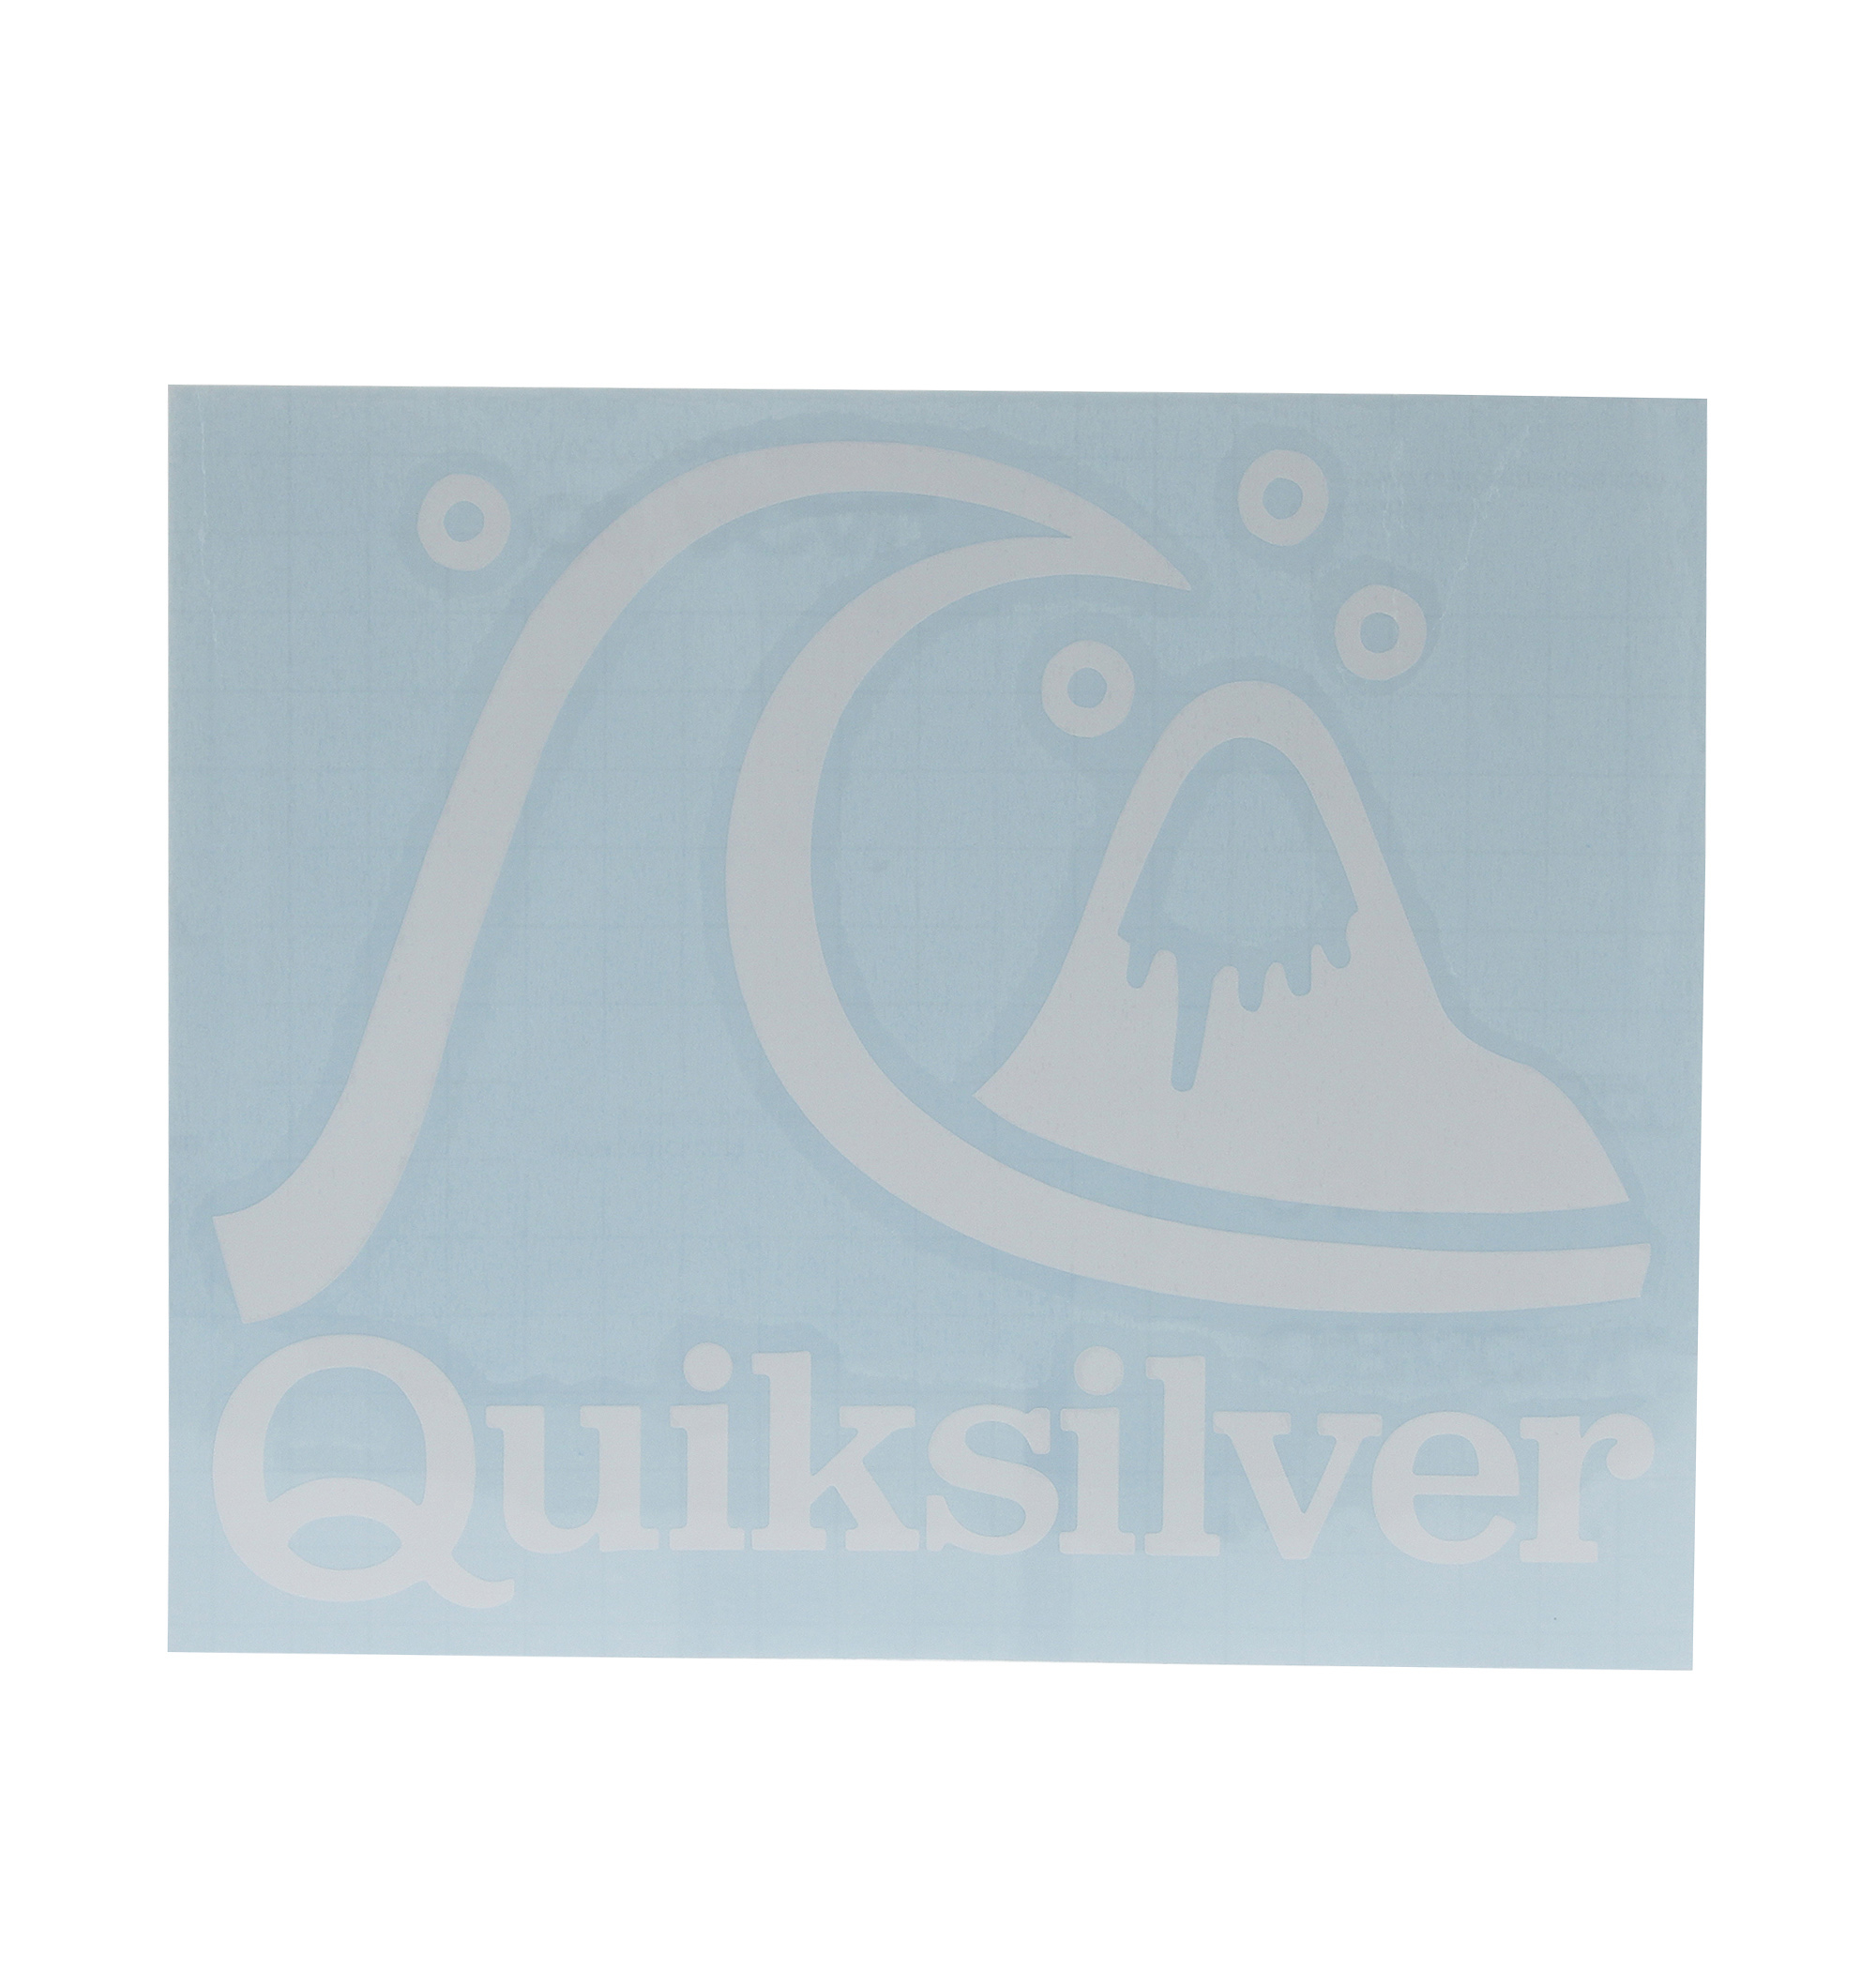 ＜Quiksilver＞ BUBBLE STICKER ブランドアイコンをデザインしたステッカー画像